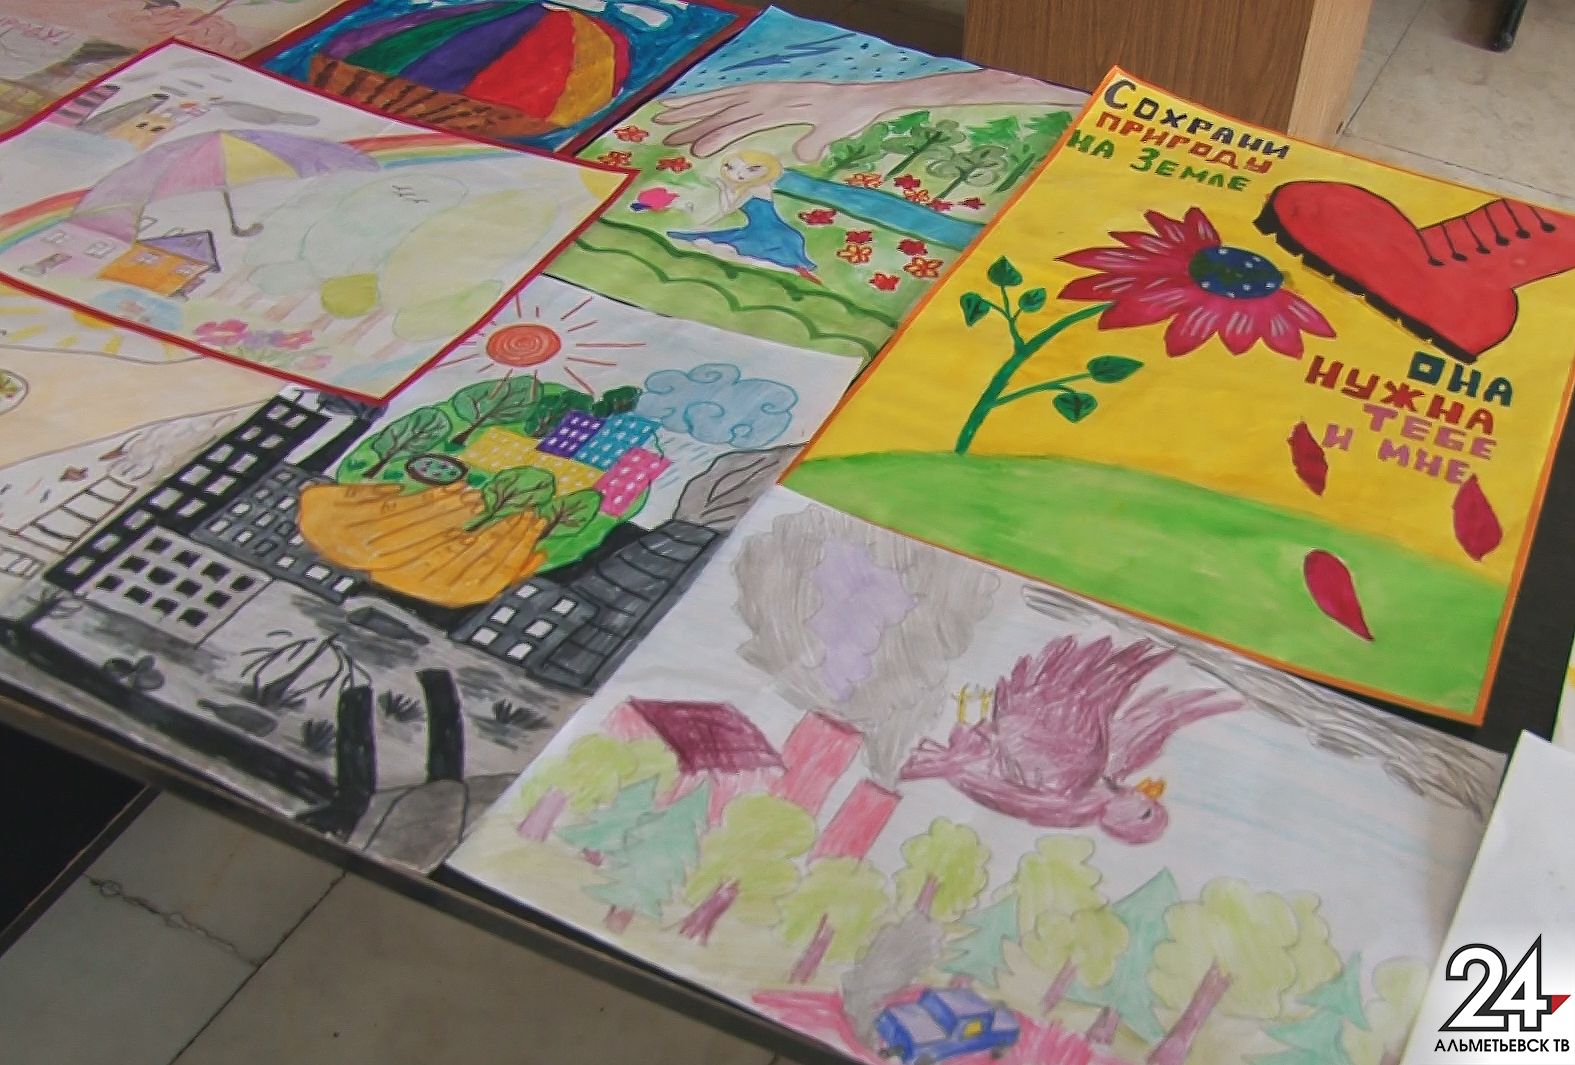 Около ста работ от маленьких альметьевцев уже поступило на конкурс рисунков «Экология города глазами детей»